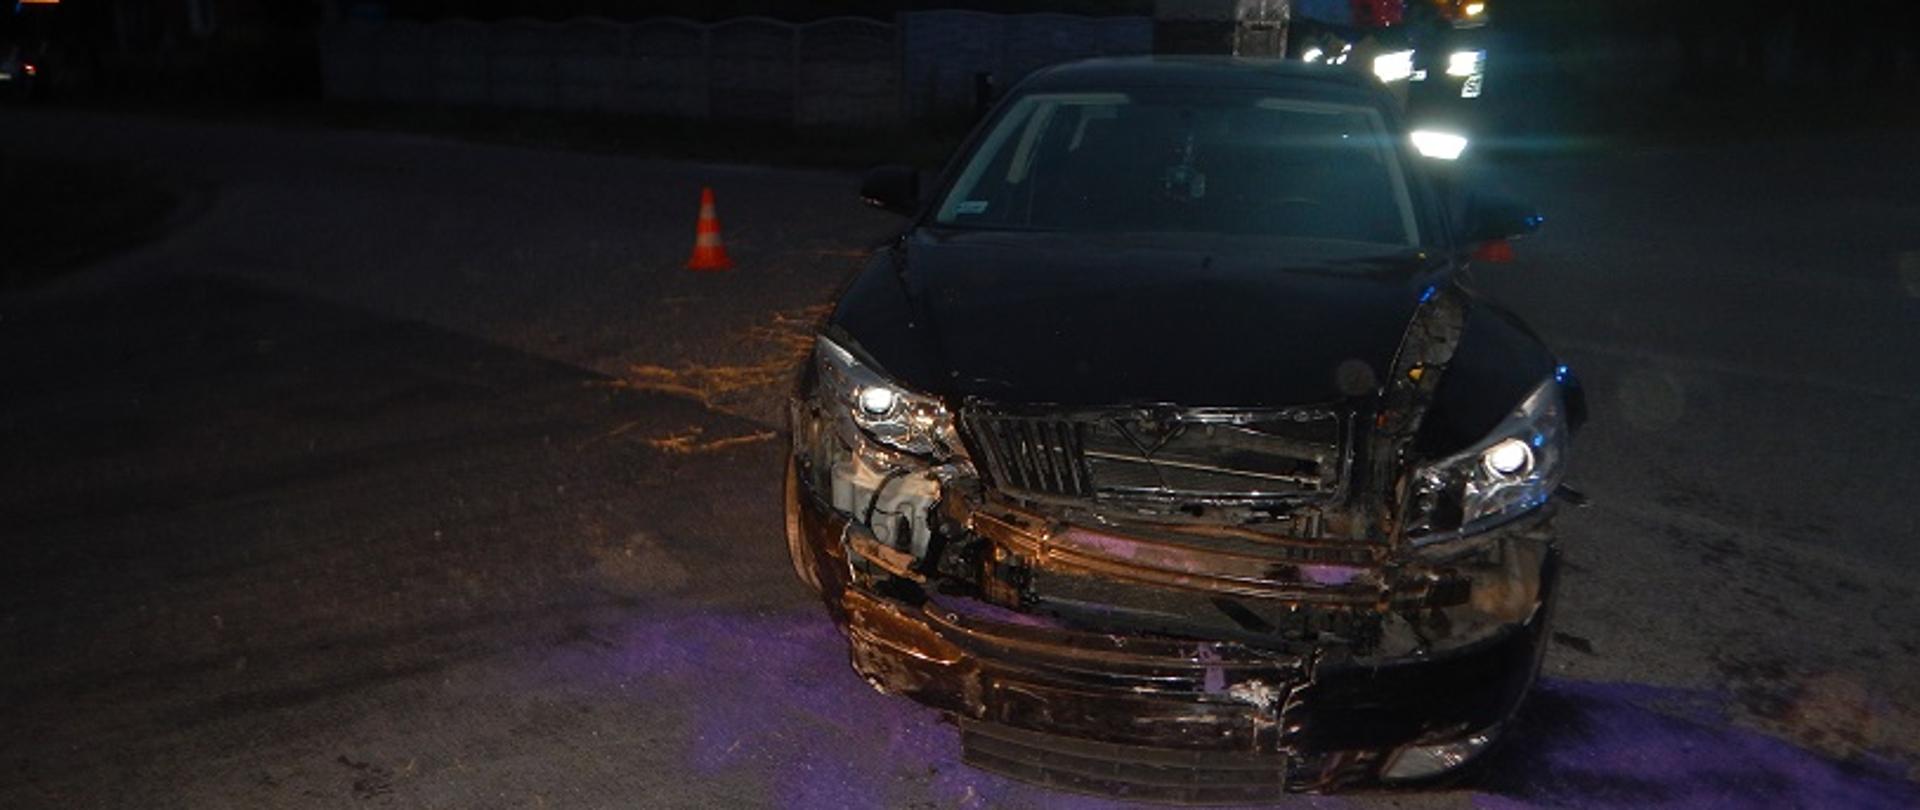 Zdjęcie przedstawia samochód koloru czarnego marki Skoda Octawia, uszkodzony z przodu, po zderzeniu z samochodem osobowym marki Nissan Primery.